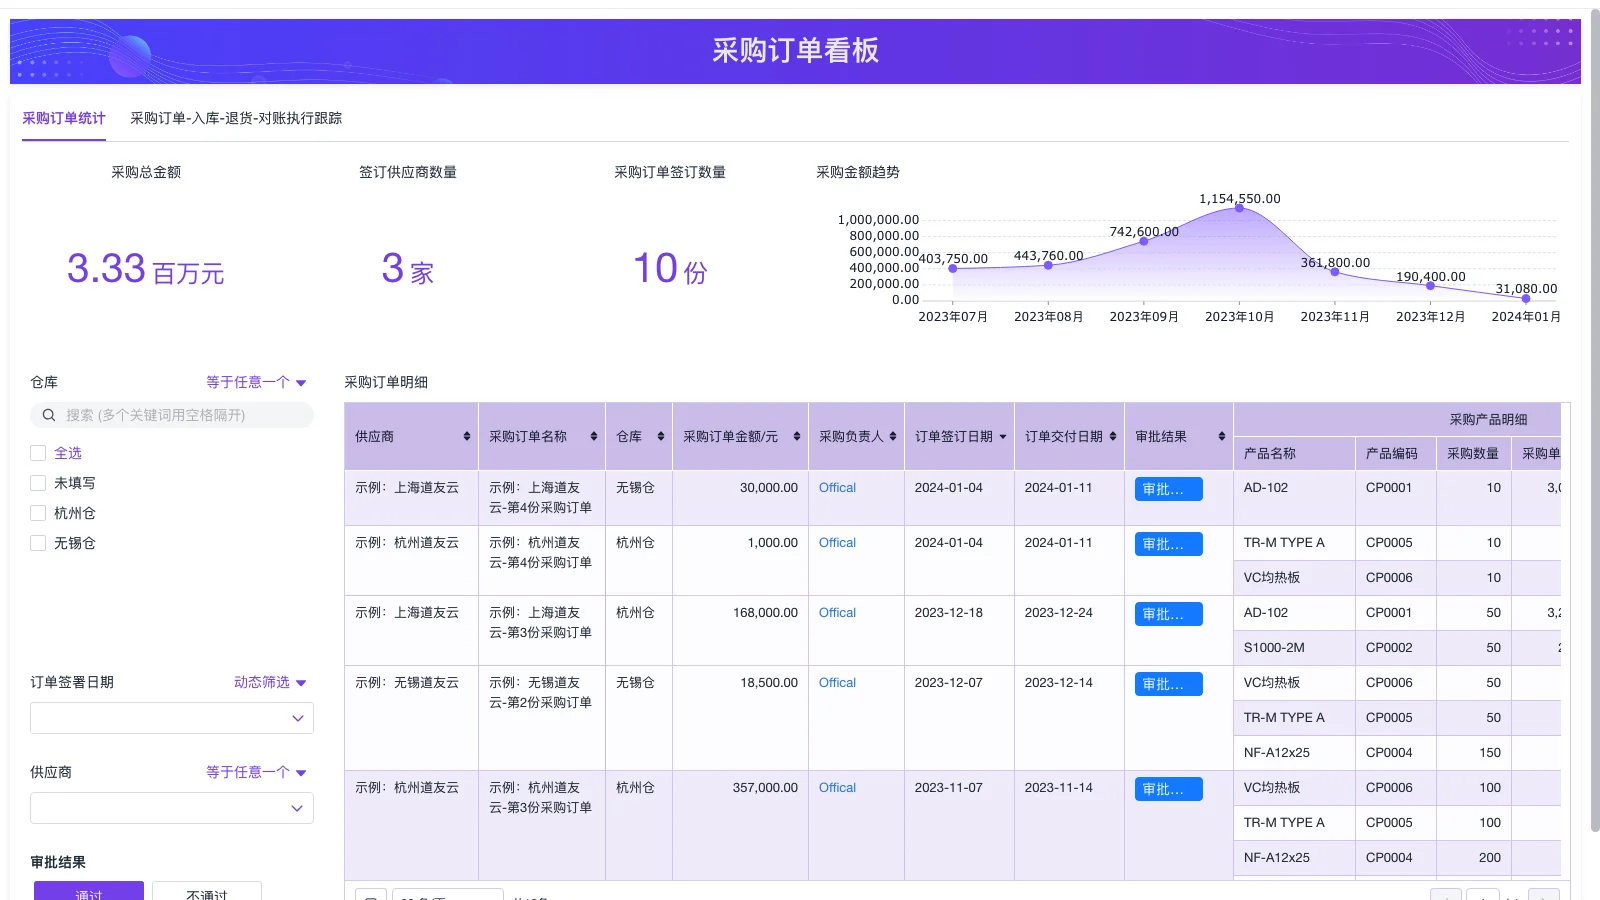 上海生产运营软件供应商